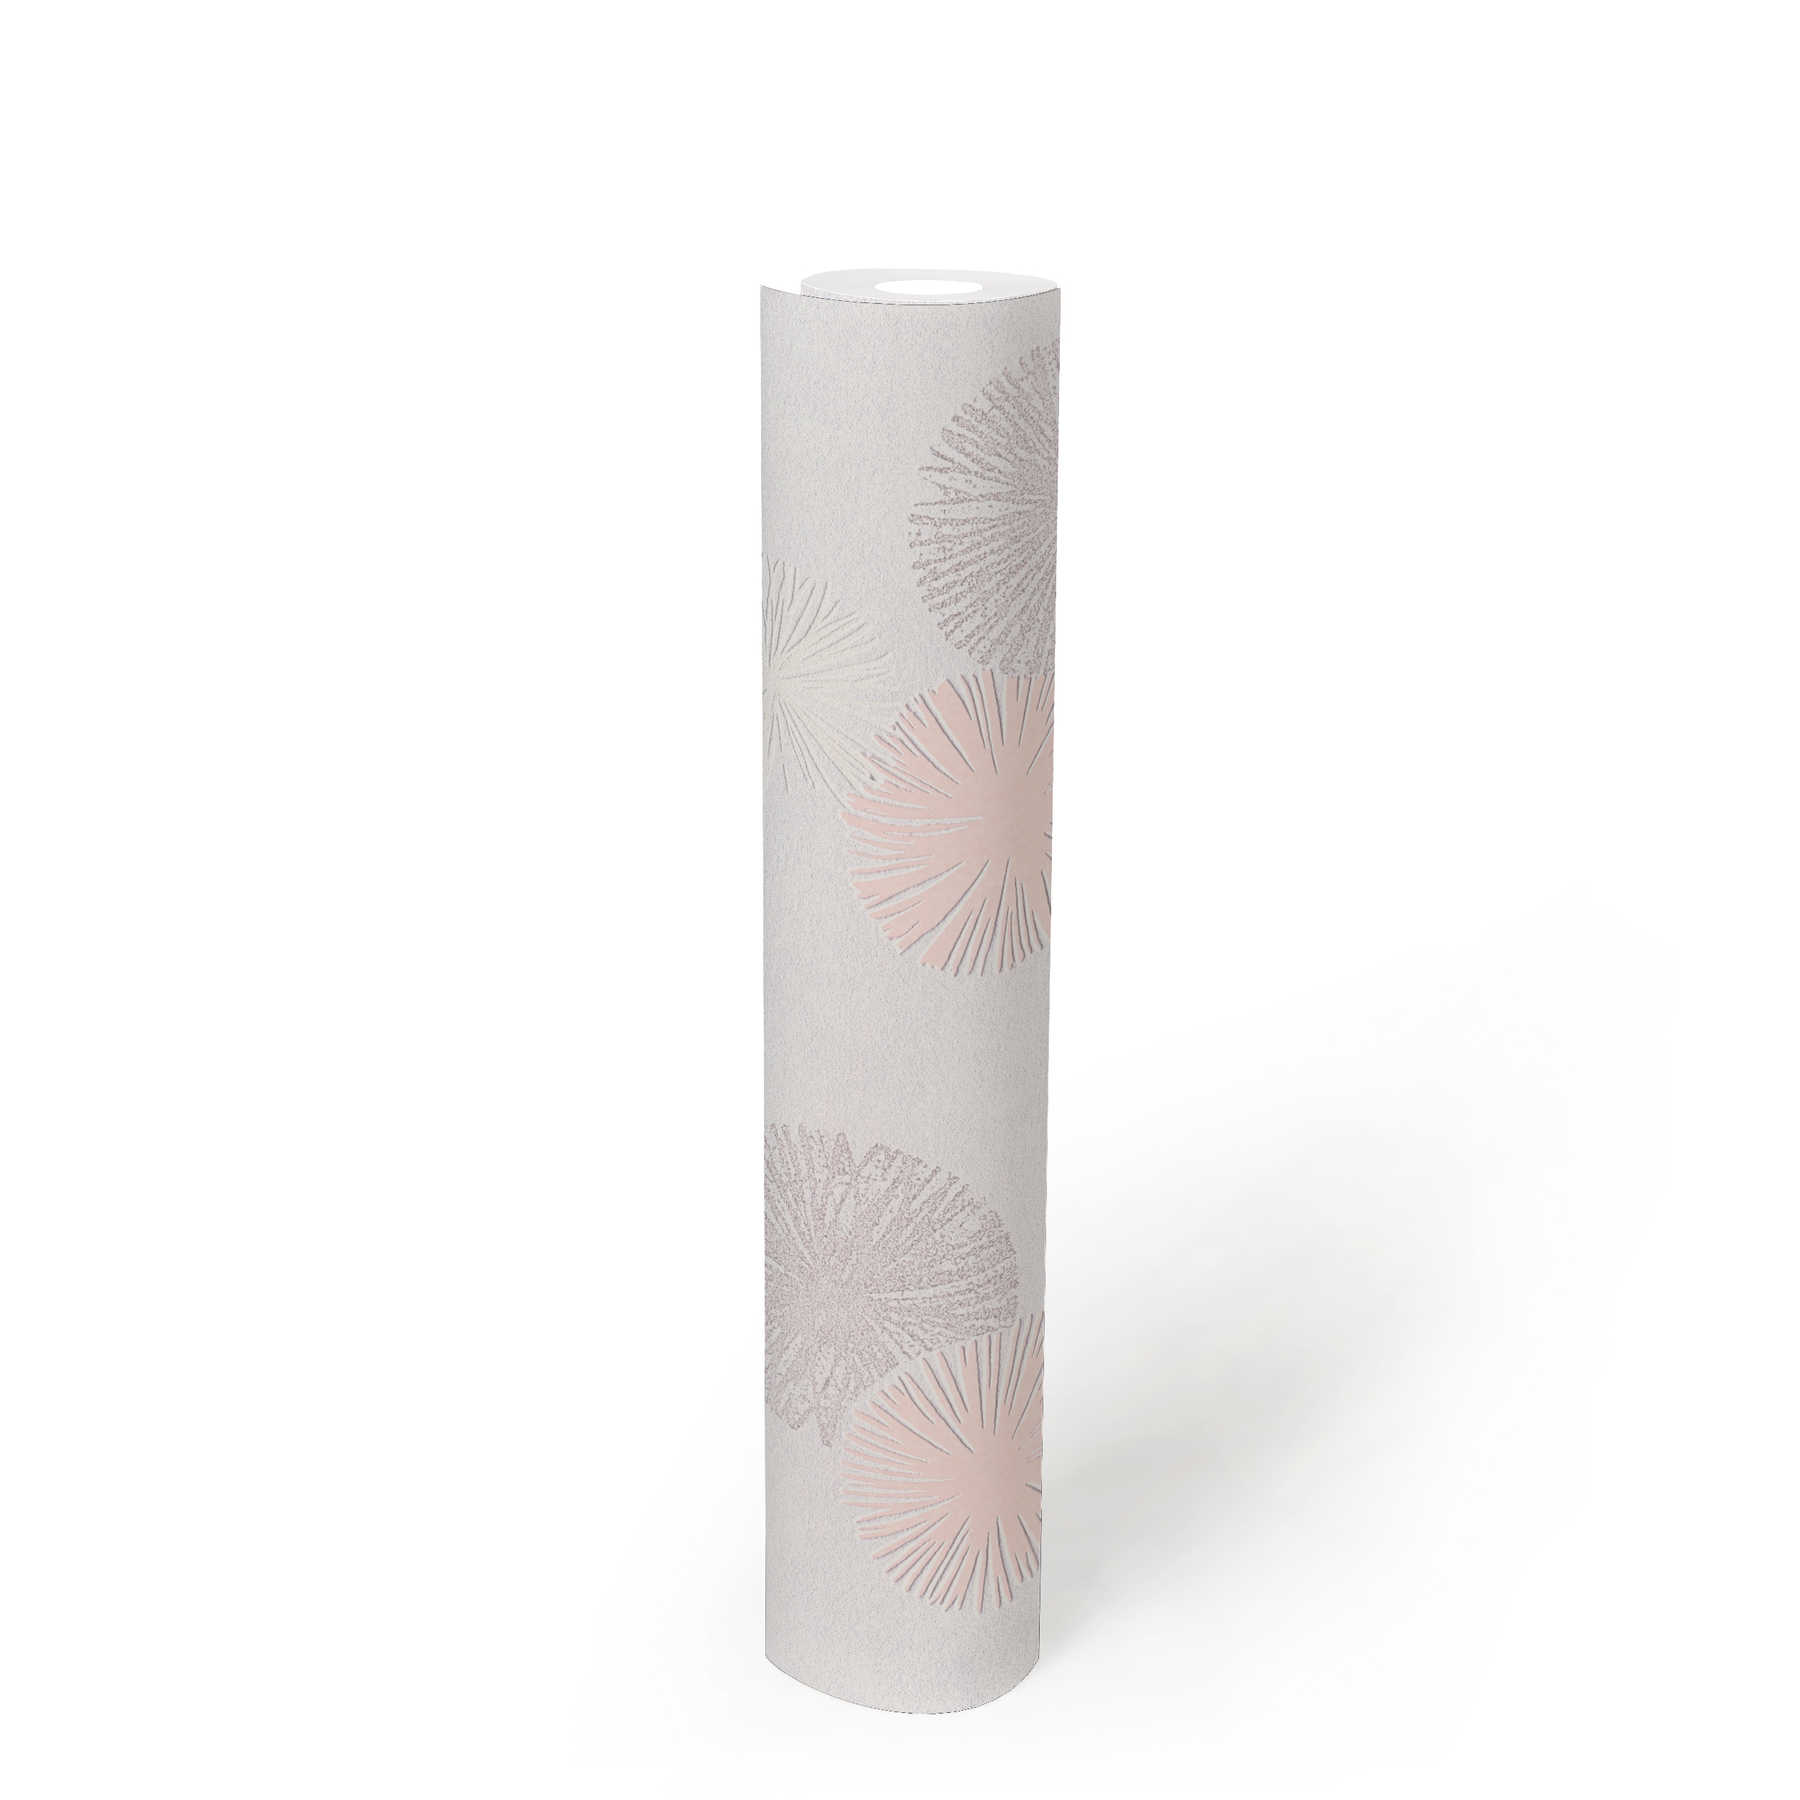             Strukturtapete mit grafischem Muster – Creme, Metallic, Rosa
        